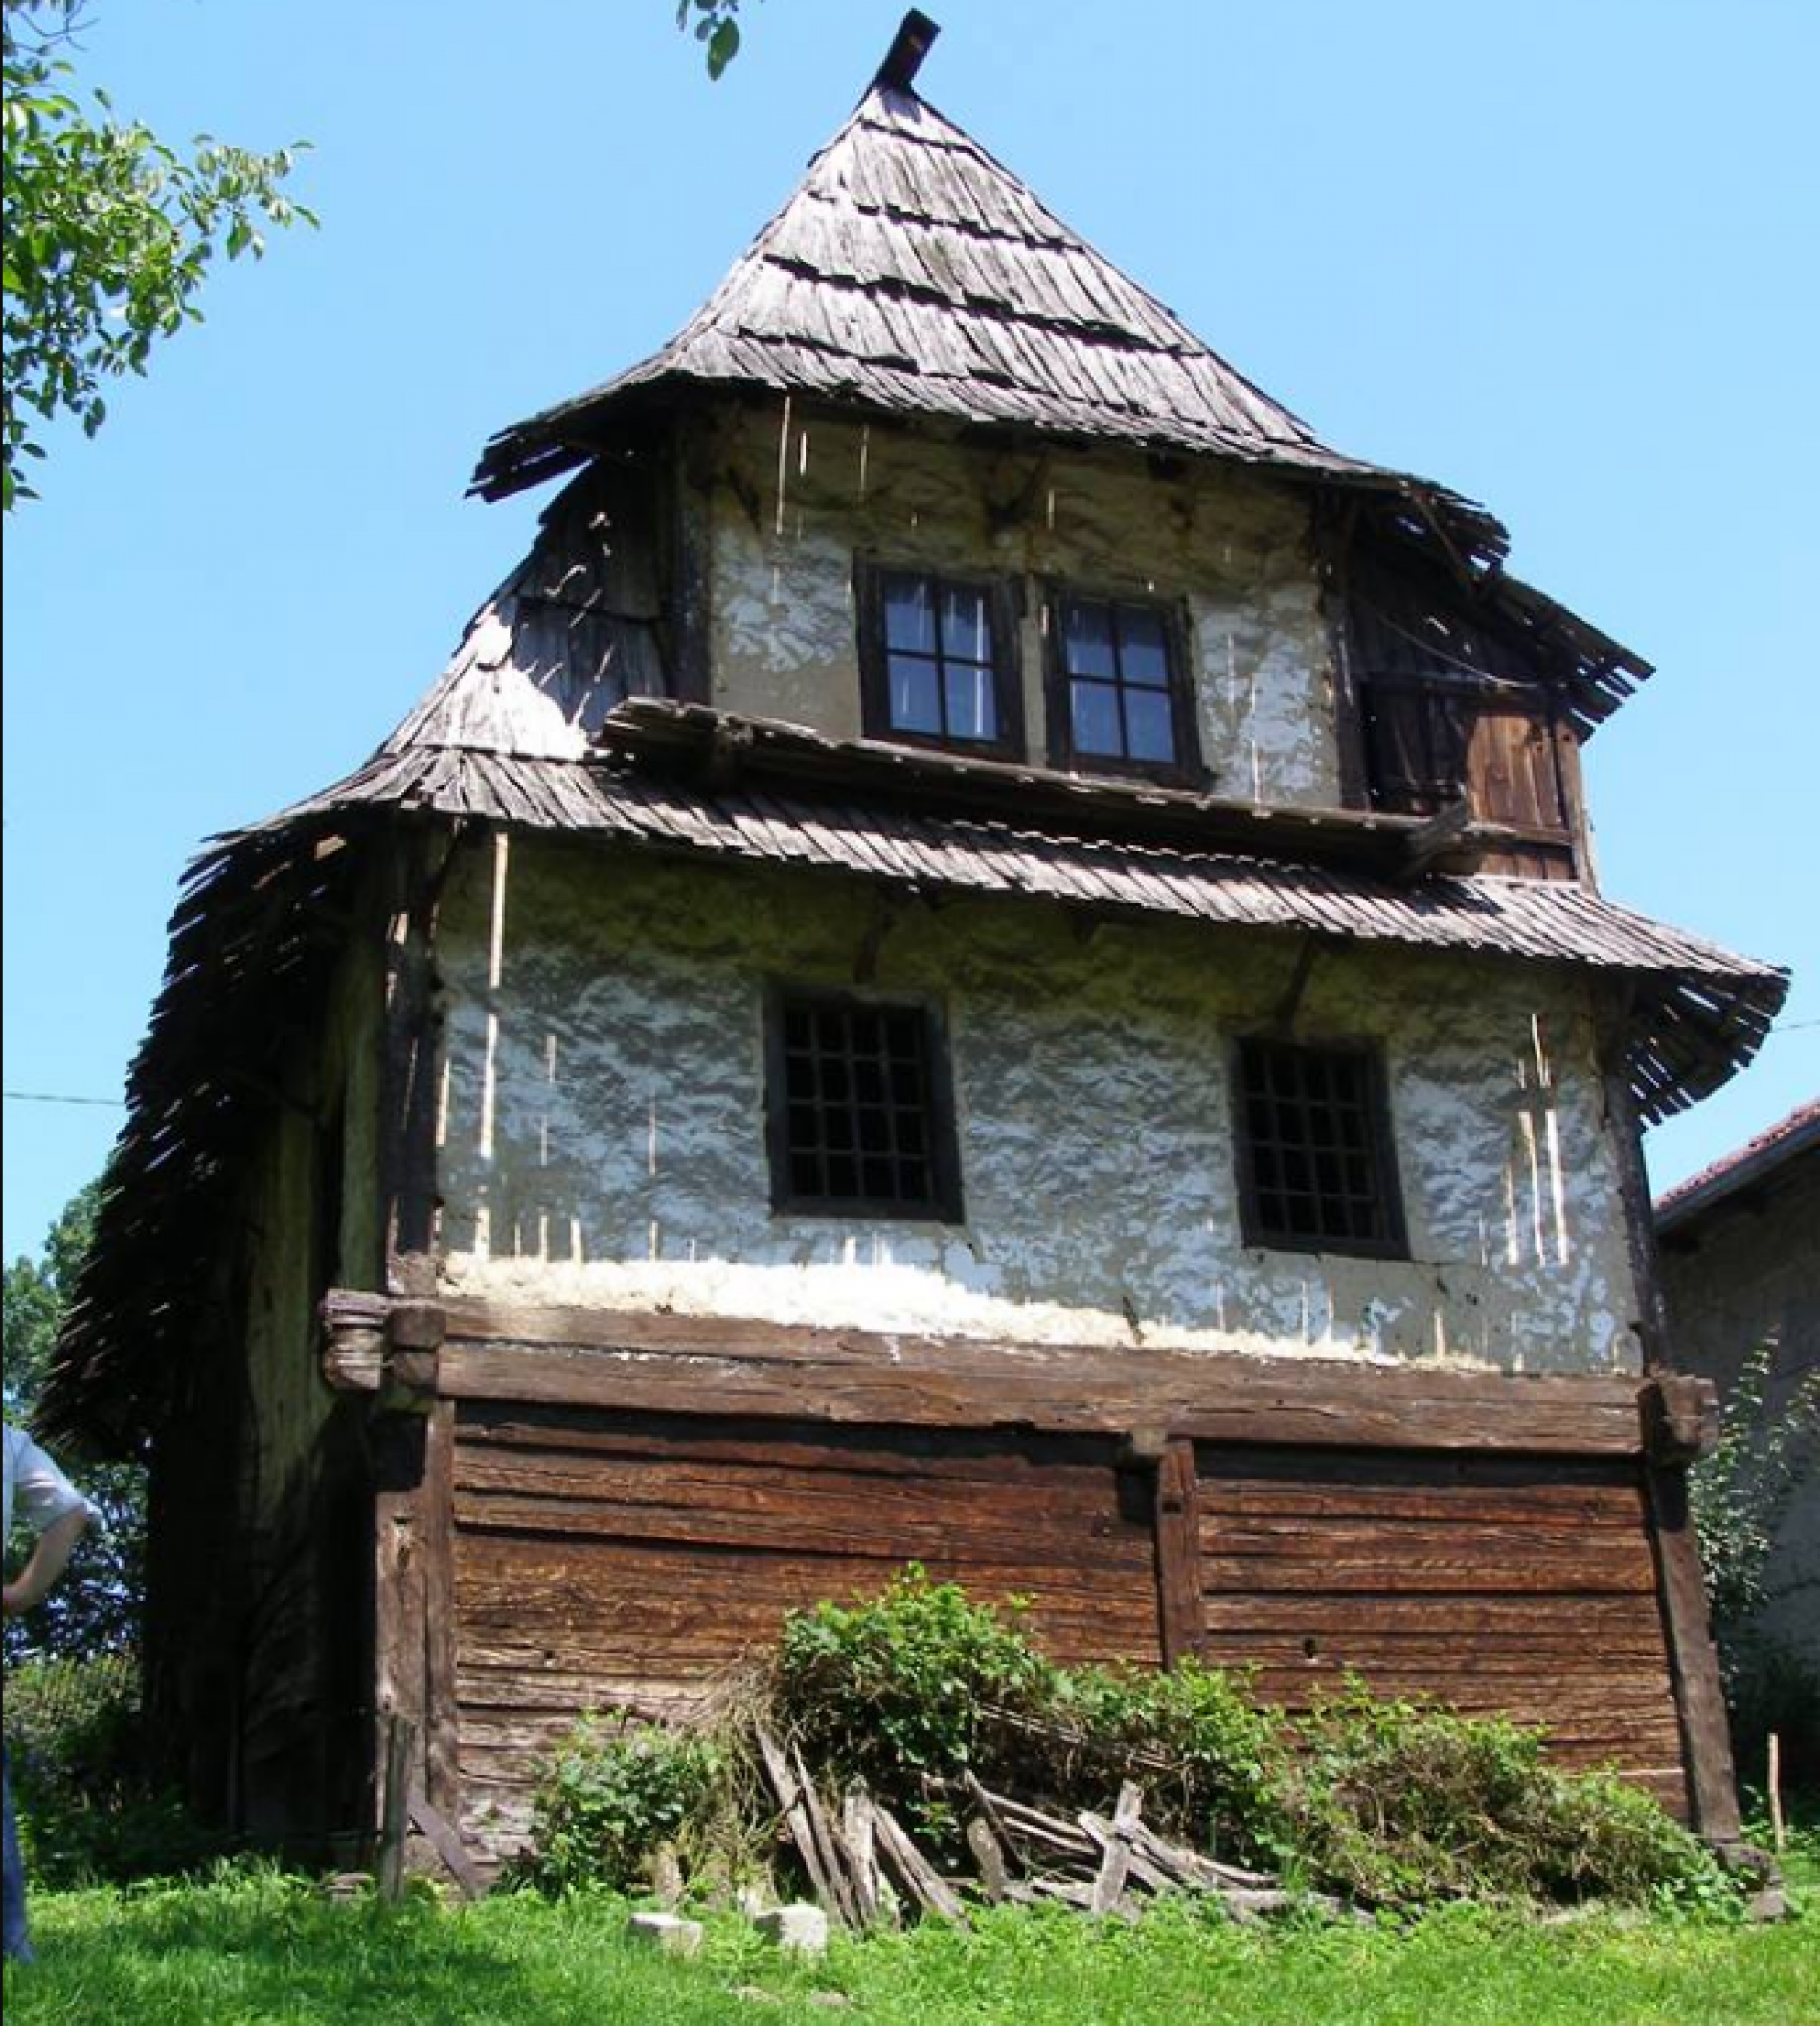 Čamdžića kuća u Puračiću – jedna od rijetkih sačuvanih brvnara sa čardakom